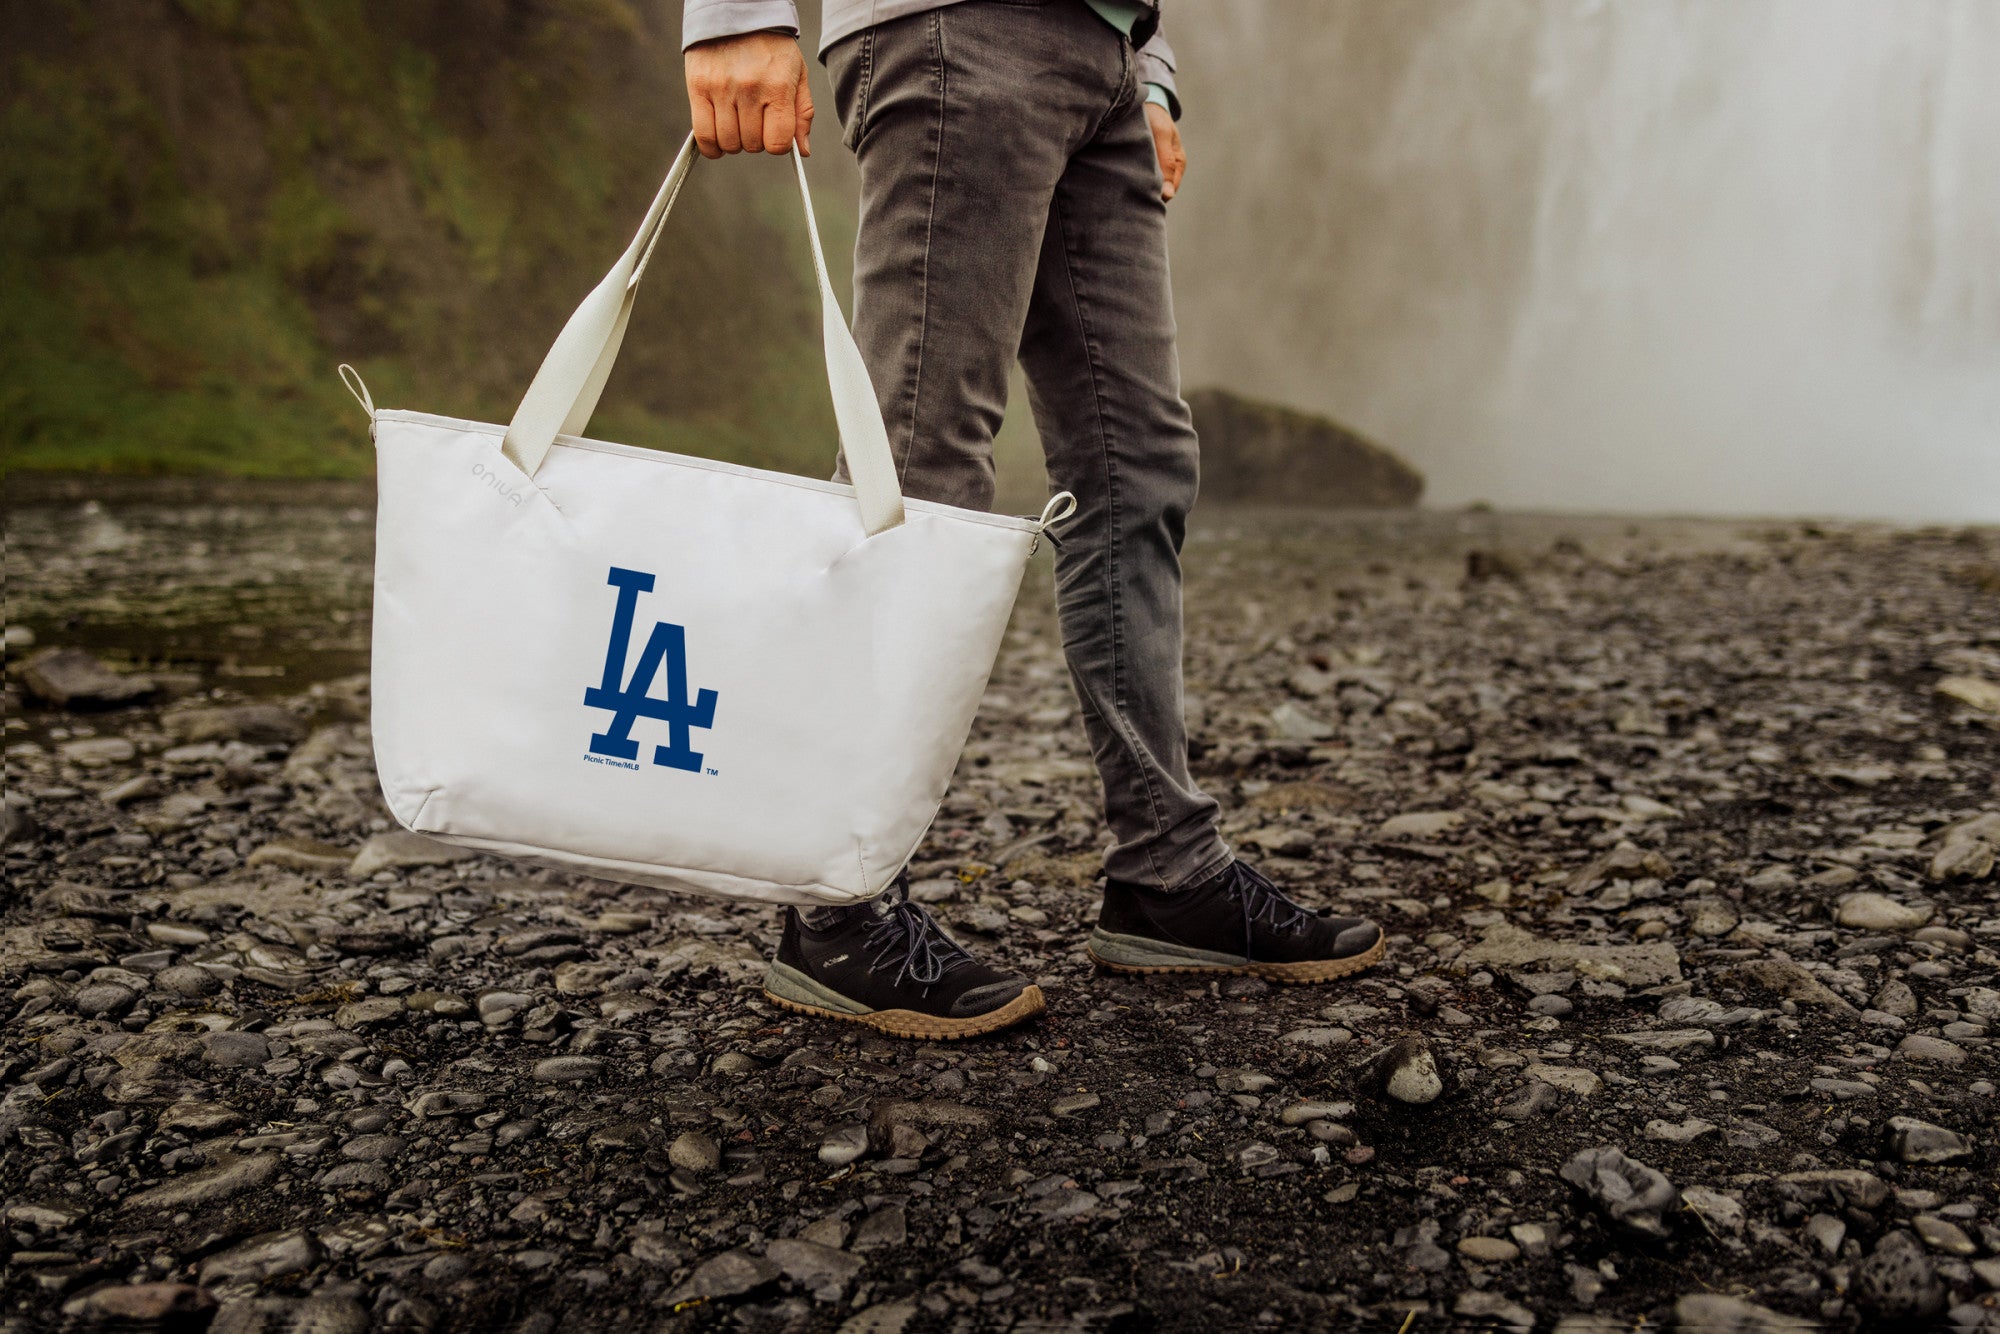 Los Angeles Dodgers - Tarana Cooler Tote Bag